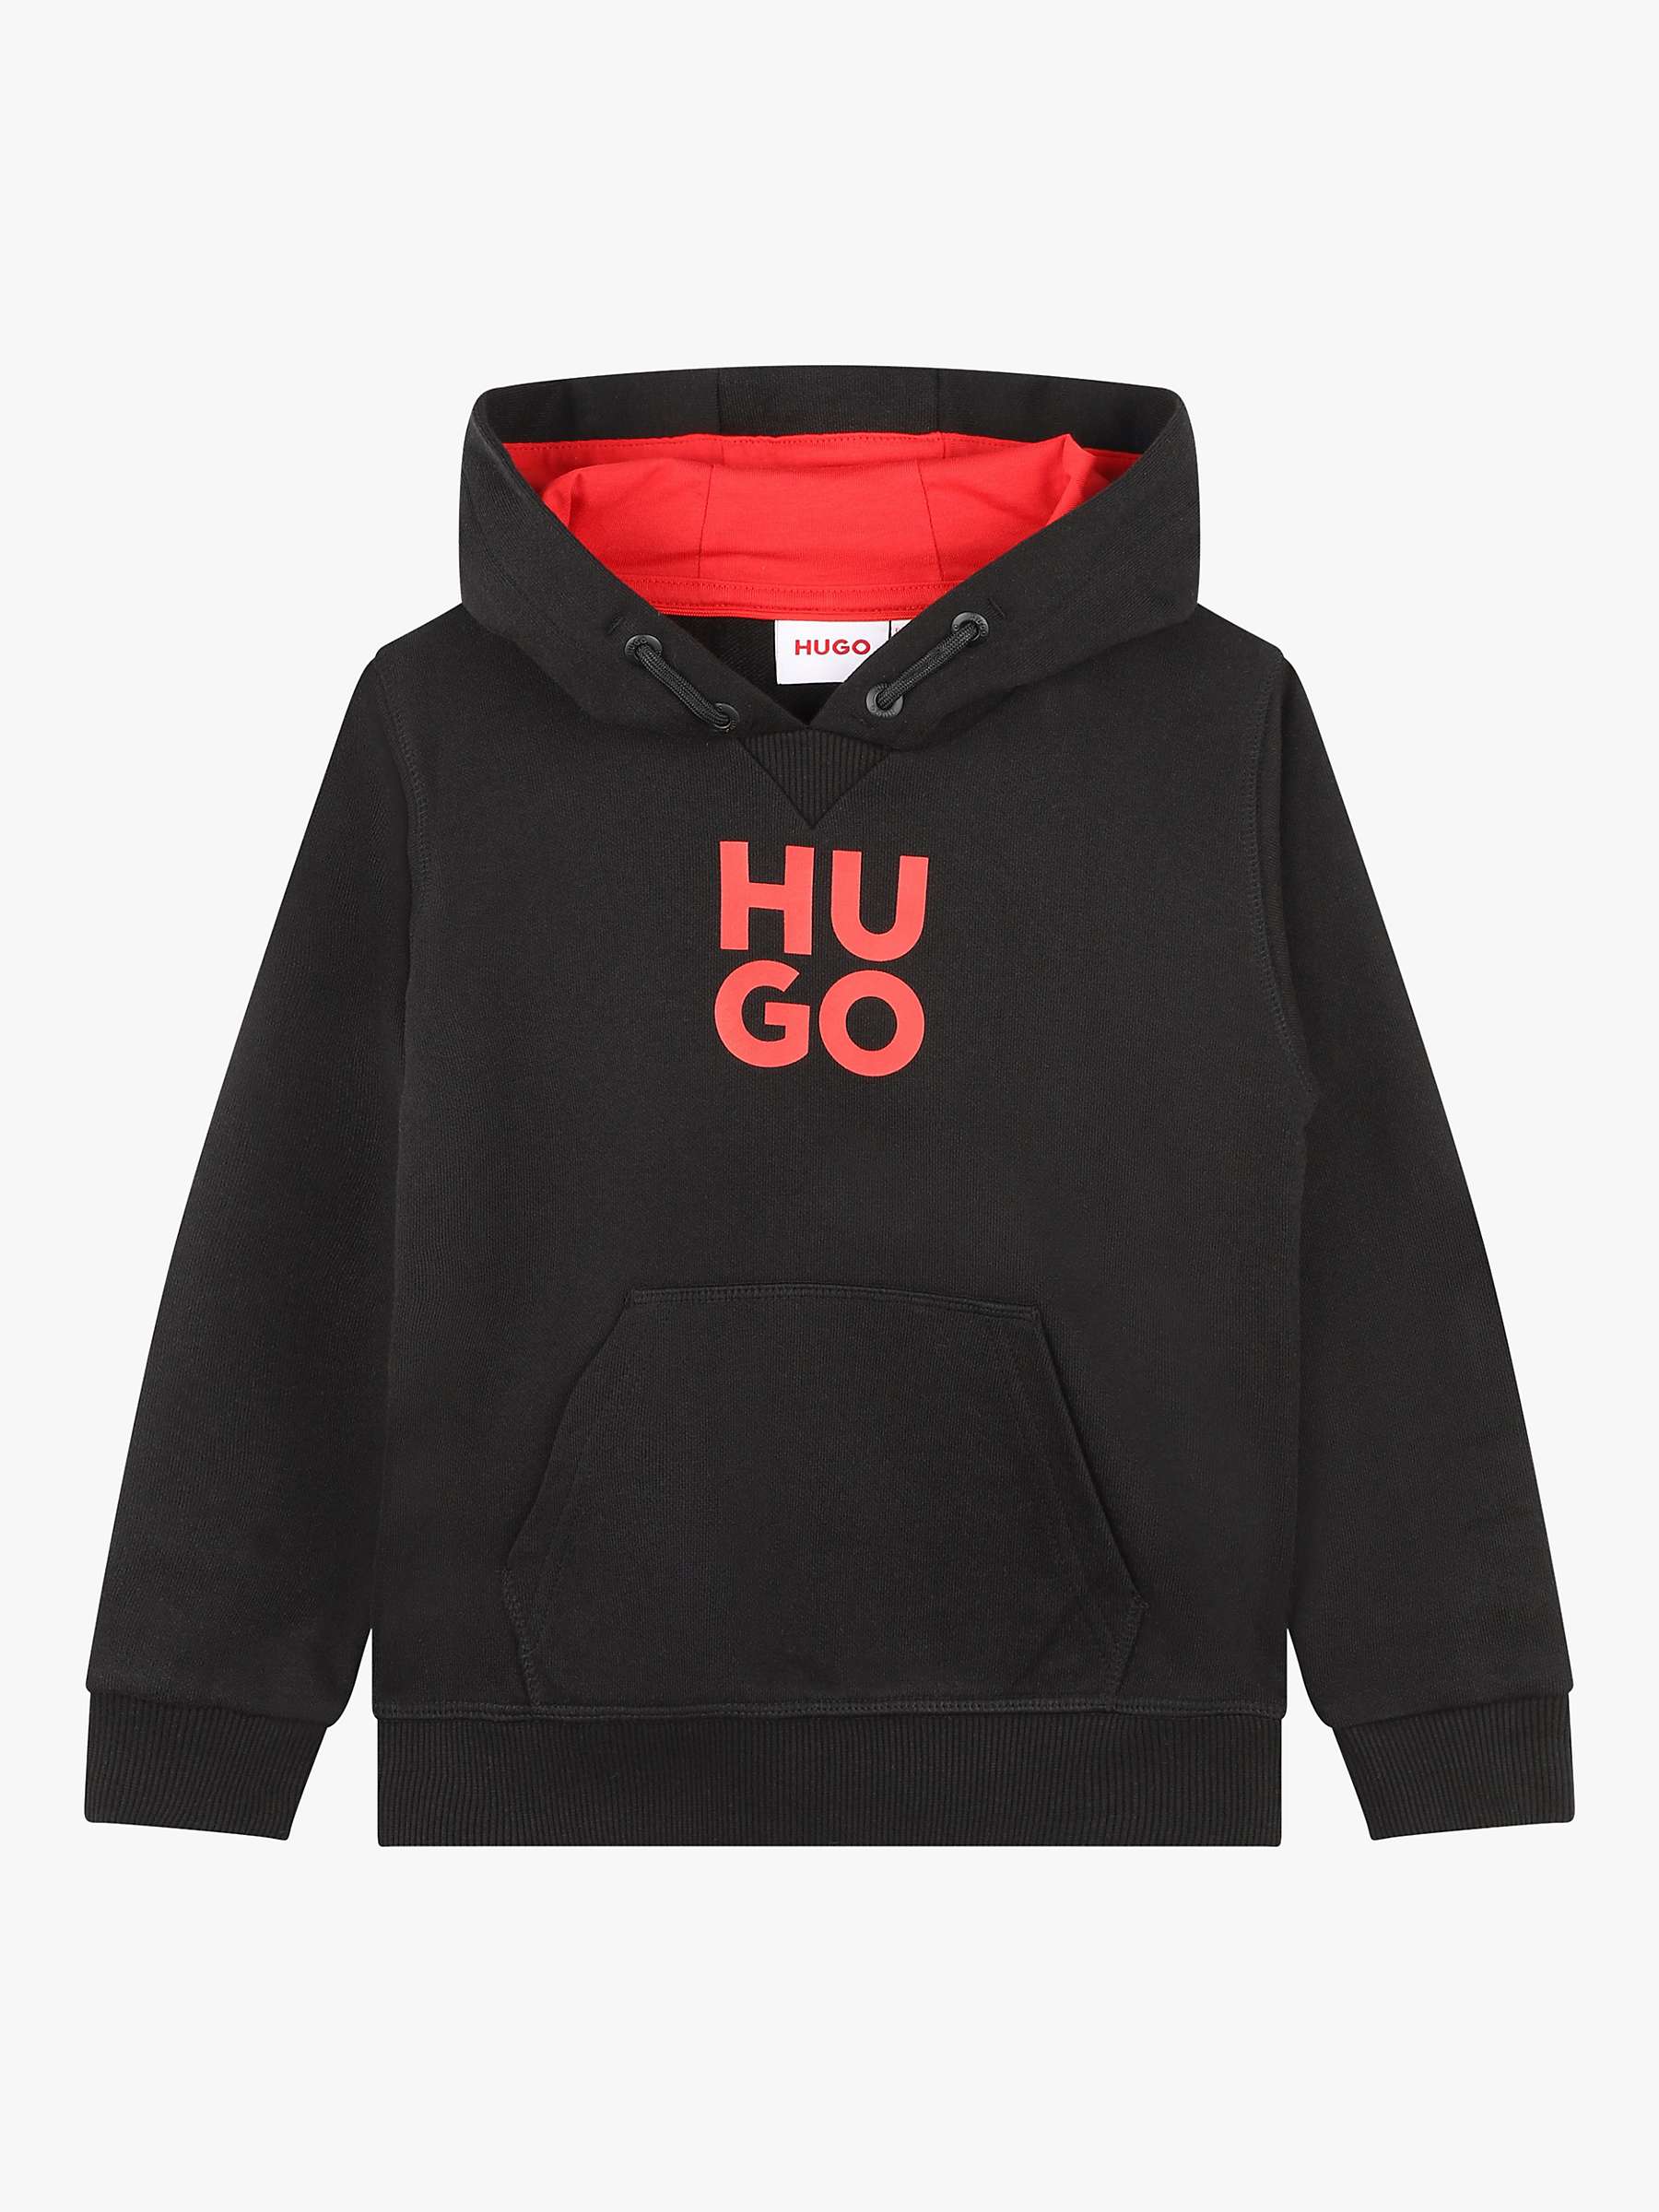 Buy BOSS Kids' HUGO Hooded Sweatshirt Online at johnlewis.com